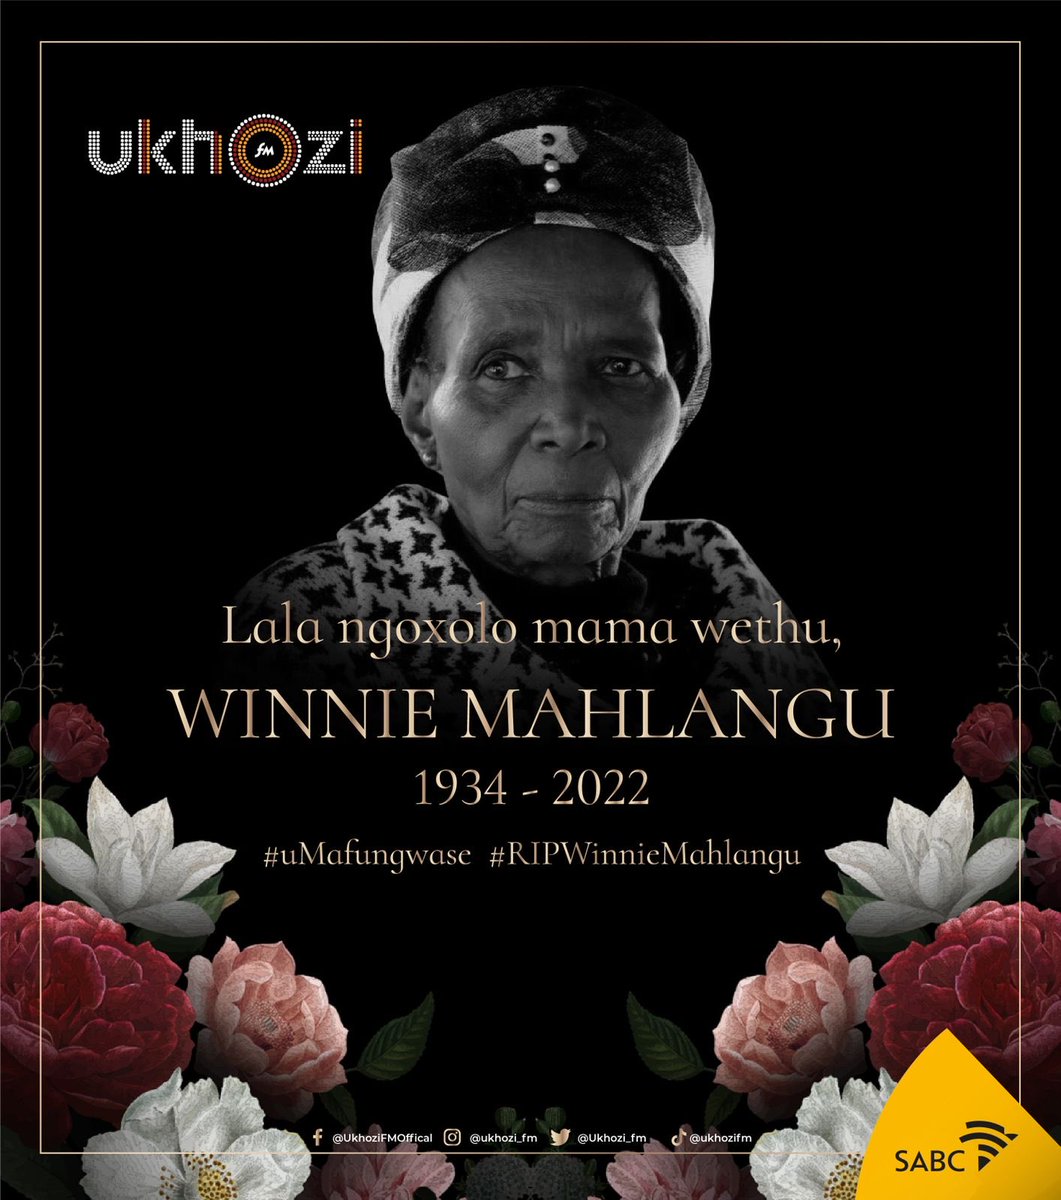 RIP Mafungaase @ UKhozi_fm